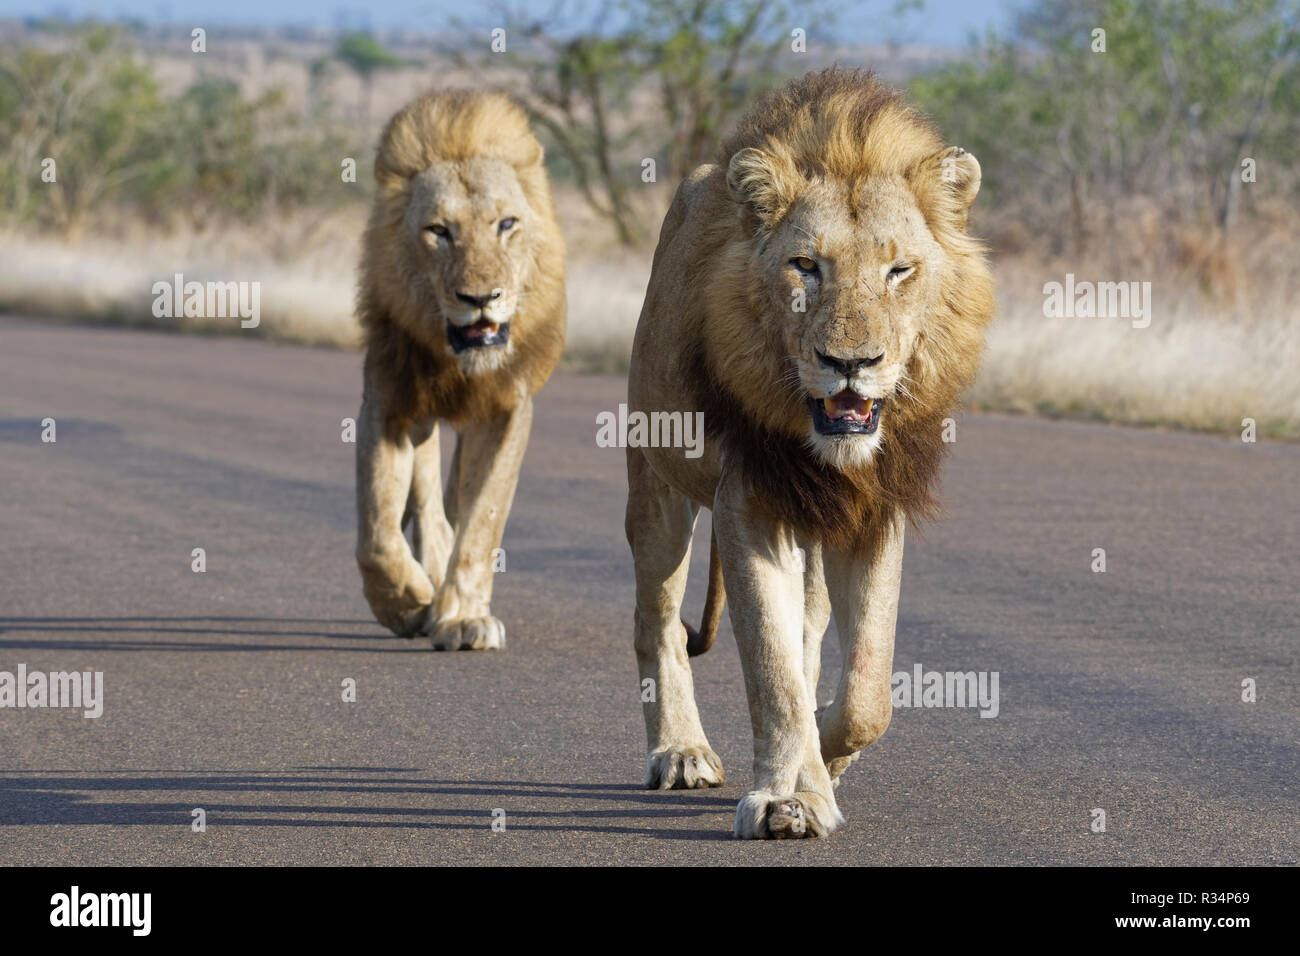 Les lions d'Afrique (Panthera leo), deux hommes adultes, l'un d'eux à moitié aveugle, marchant sur une route goudronnée, Kruger National Park, Afrique du Sud, l'Afrique Banque D'Images